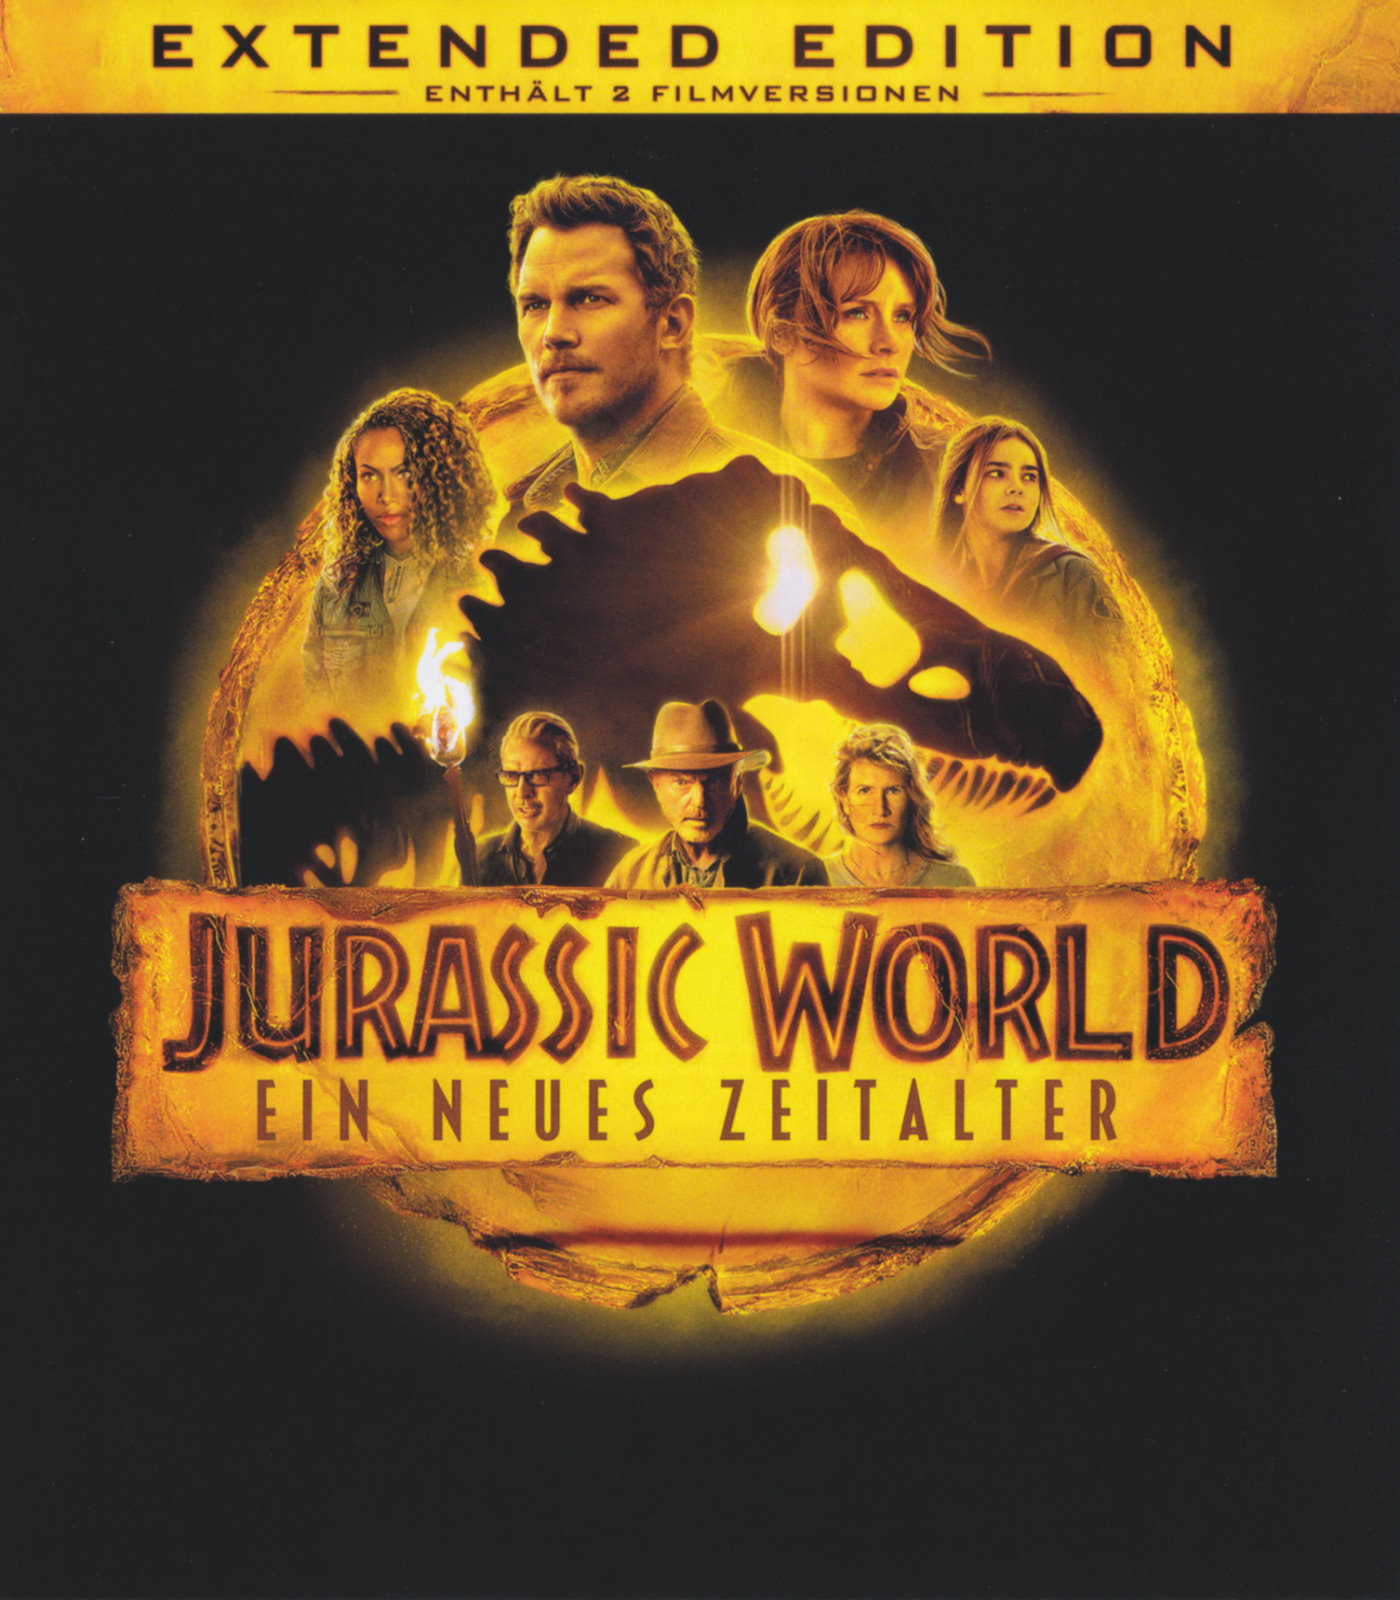 Cover - Jurassic World - Ein neues Zeitalter.jpg